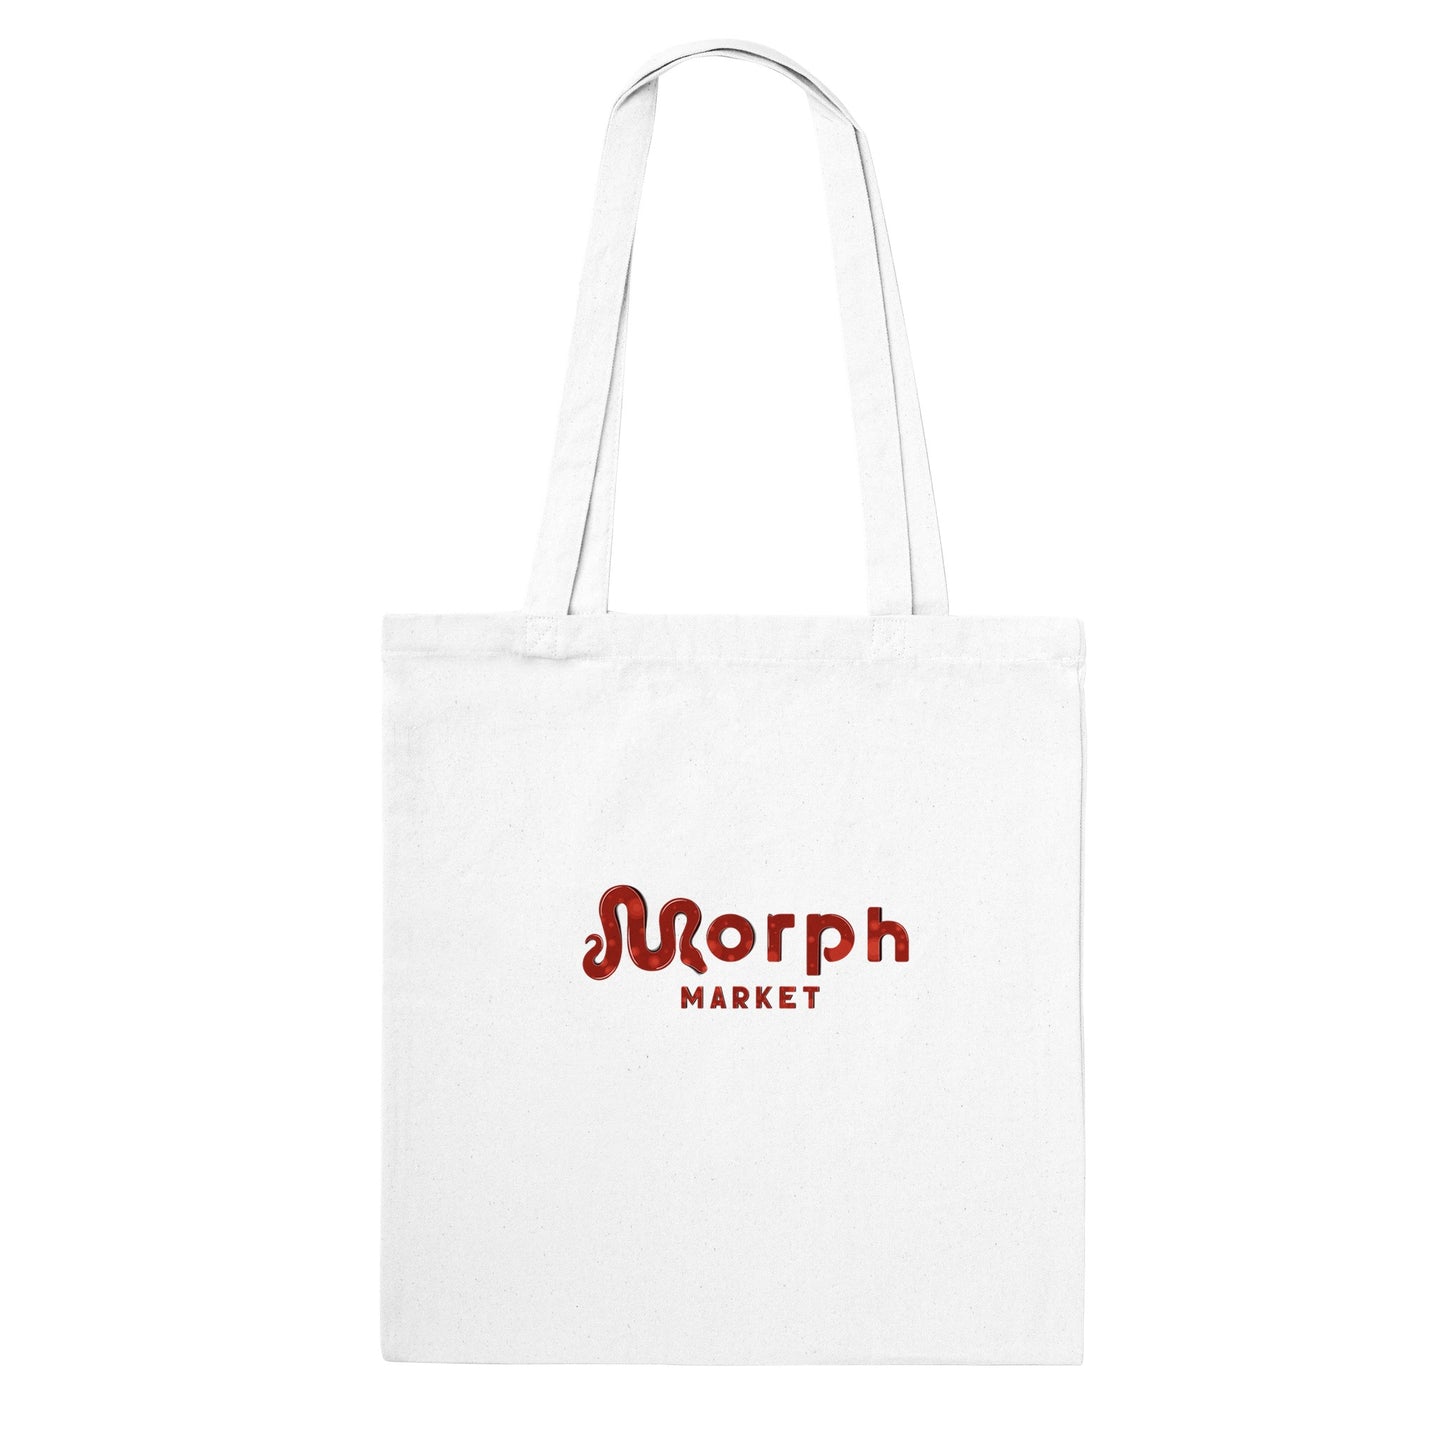 Morph Market (Red Circles) - Classic Tote Bag